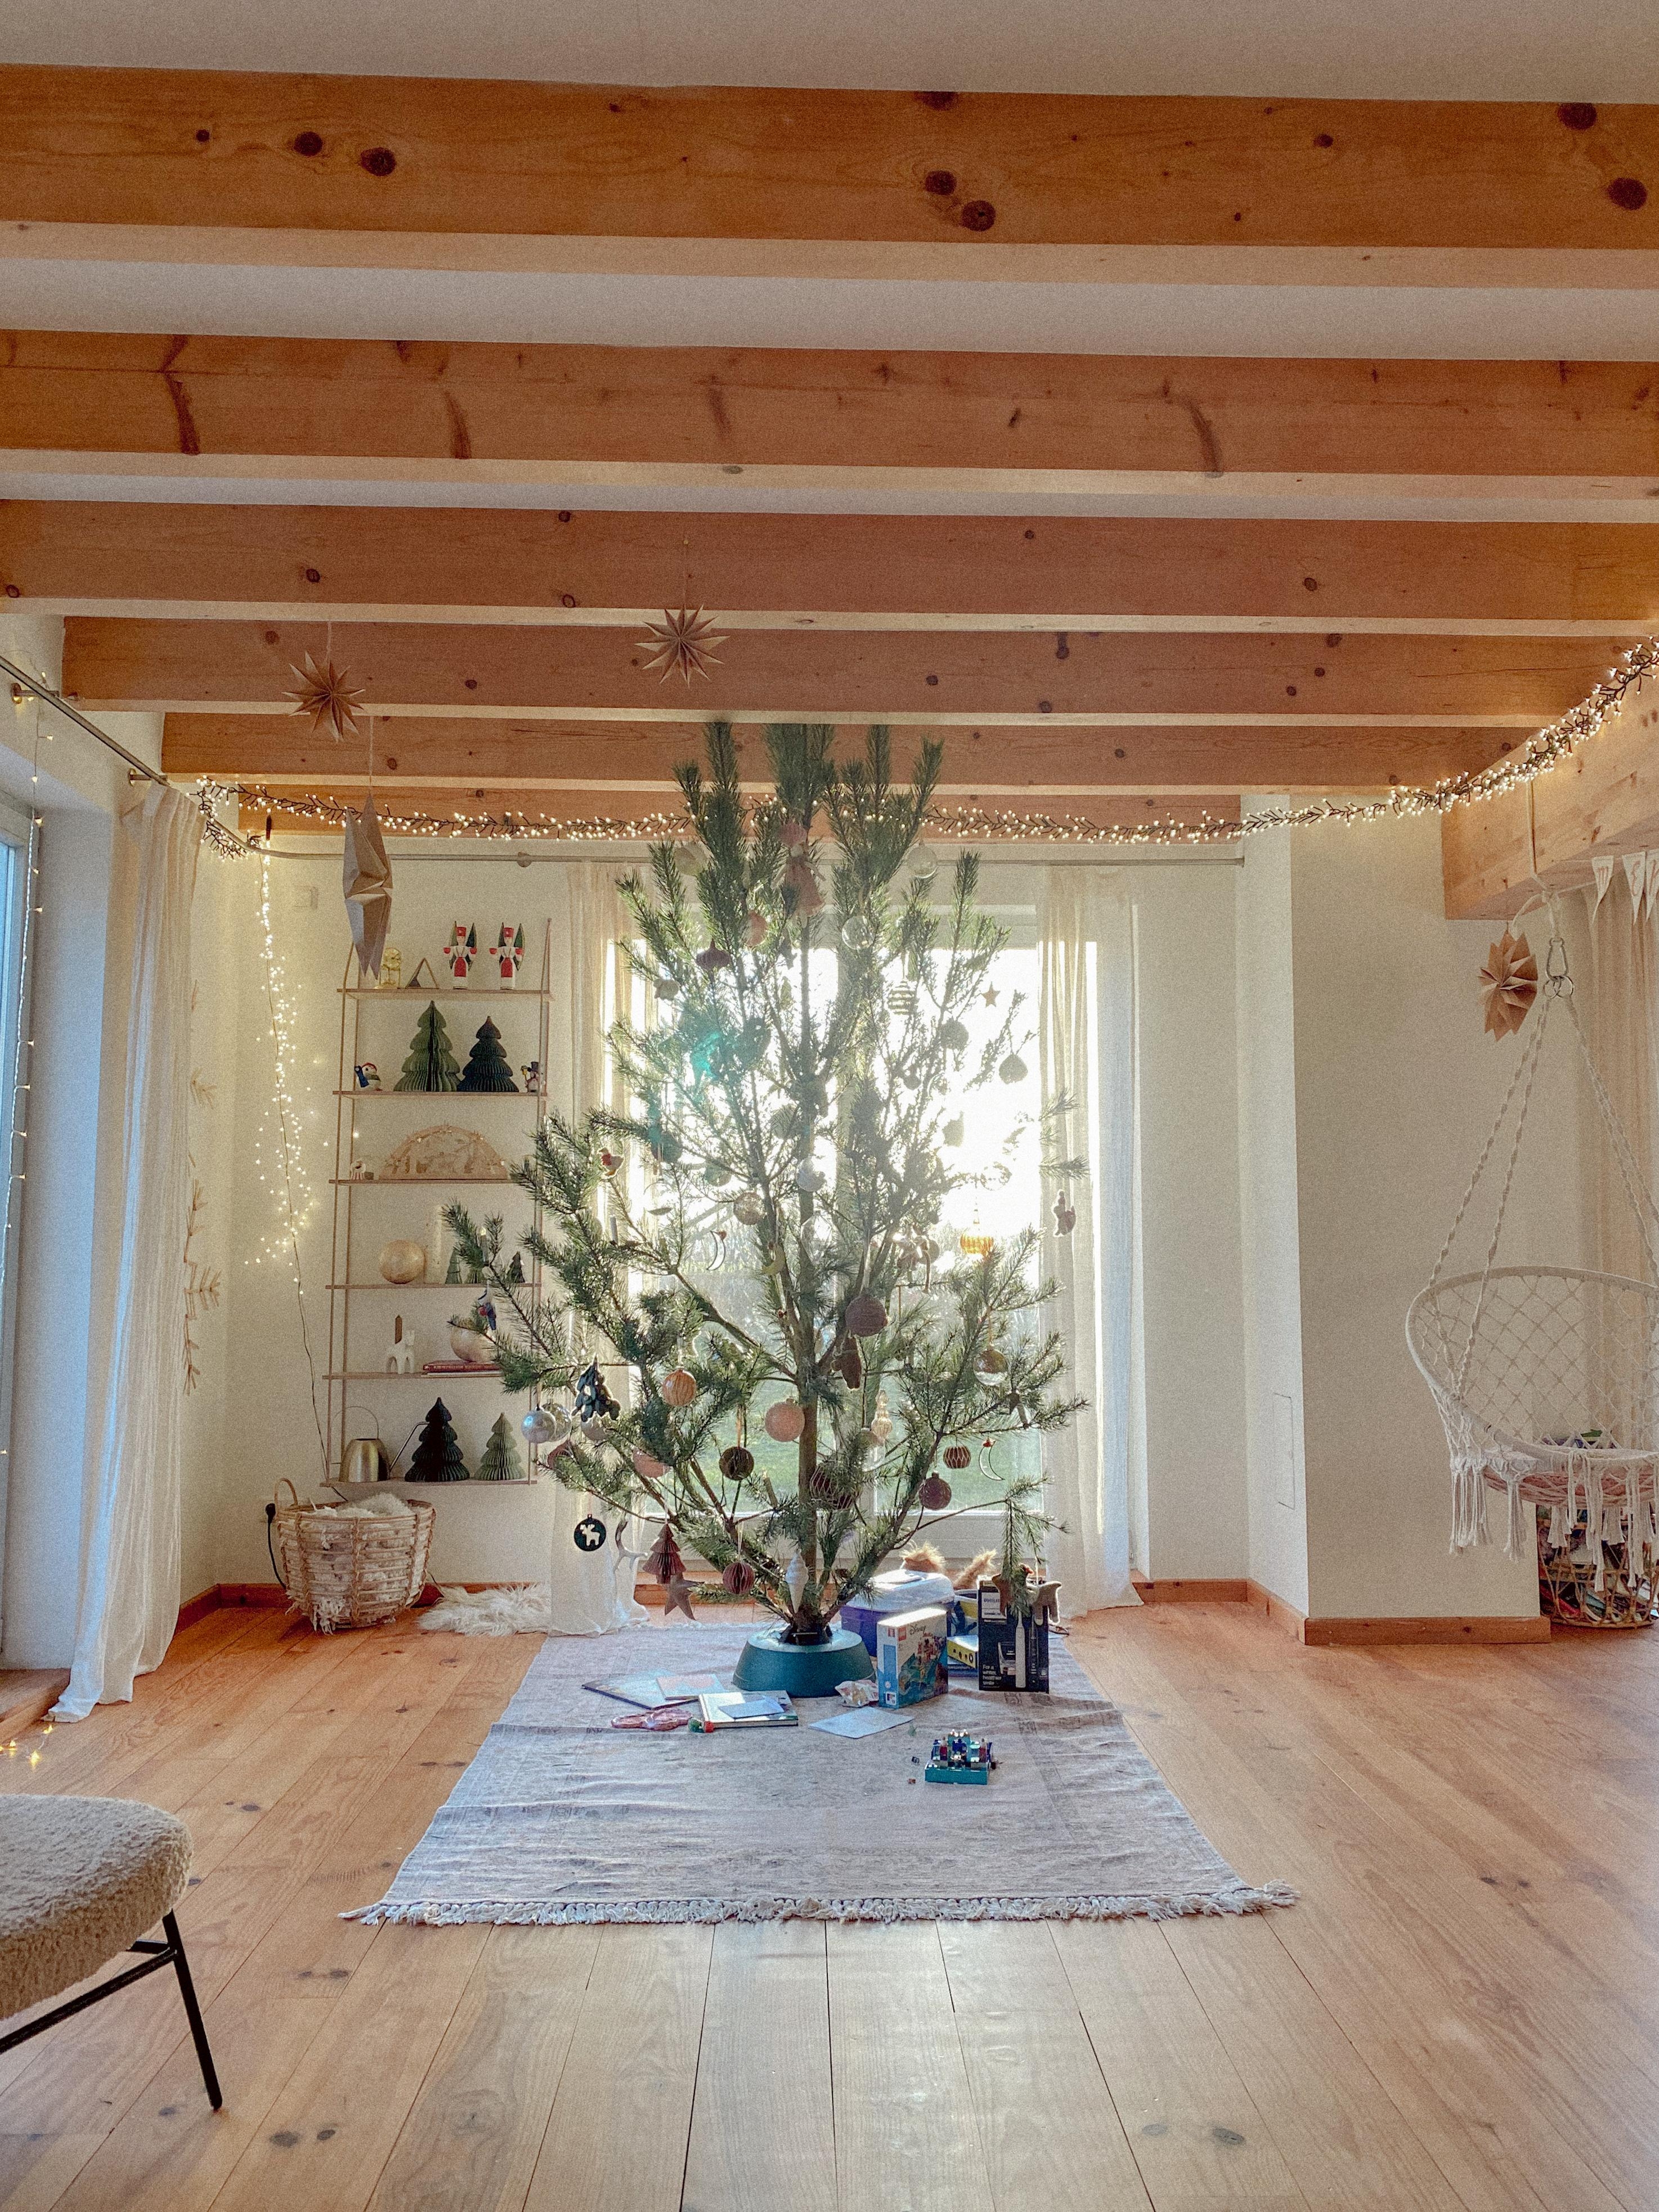 Liebe unser Zuhause. #holzhaus #weihnachtsbaum #weihnachten